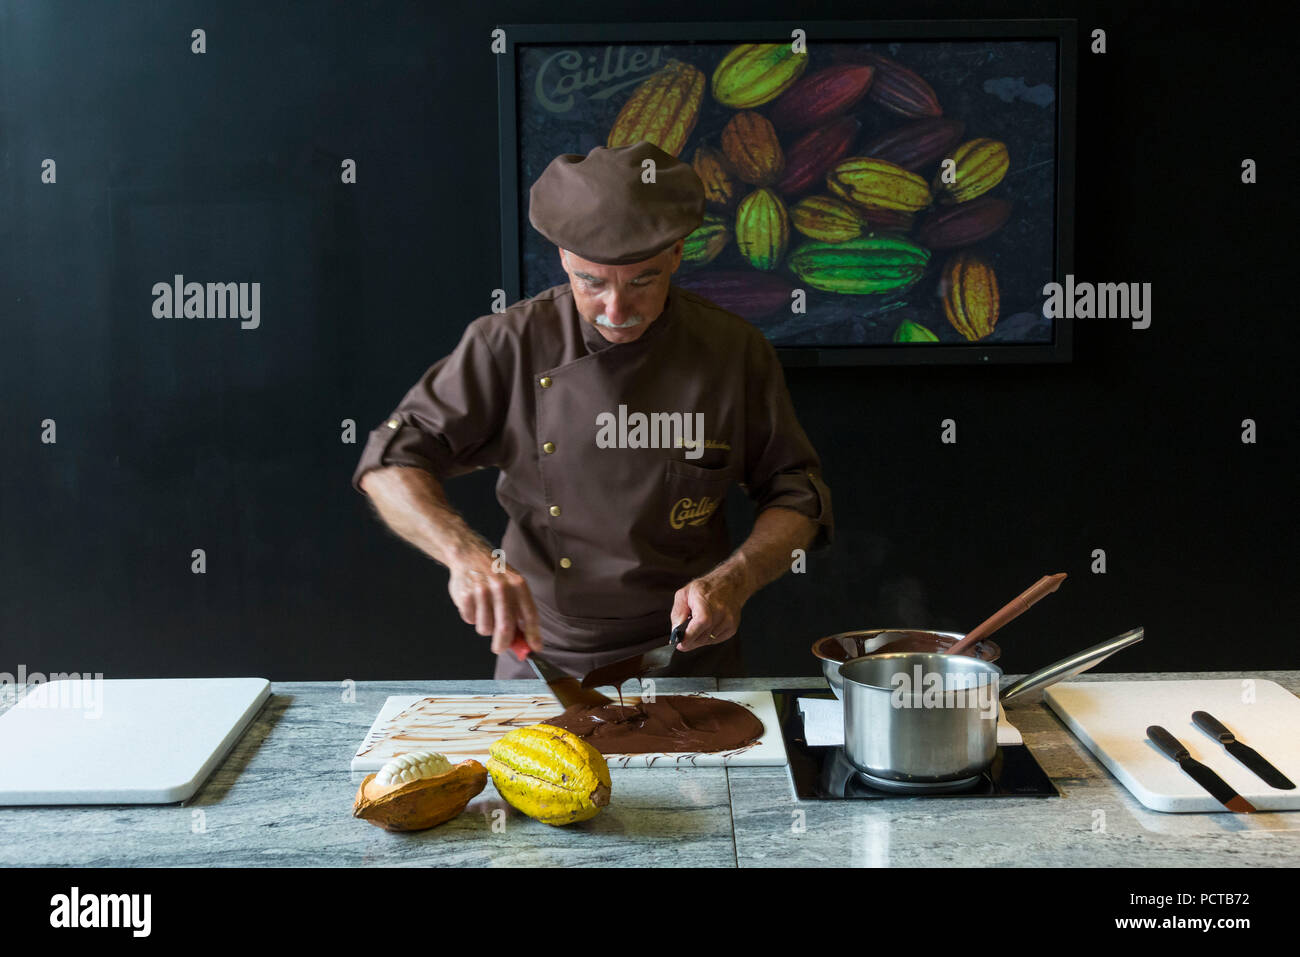 Chocolate Workshop At Cailler With Chef Chocolatiere Patrick Schneider  Stockfotos und -bilder Kaufen - Alamy